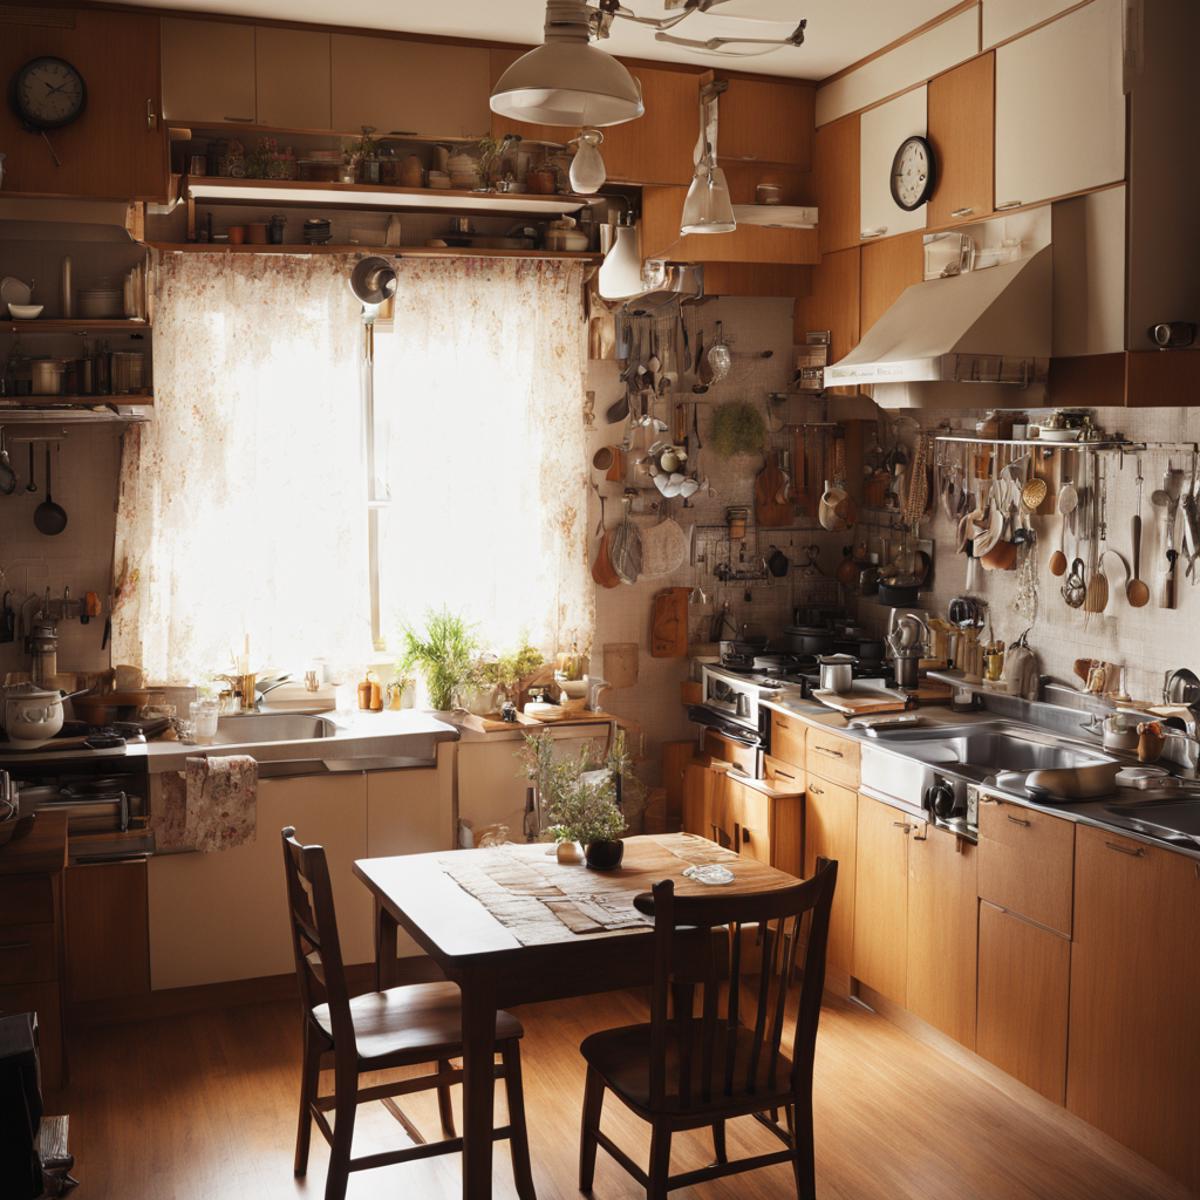 日本の住宅の台所 Kitchens in Japanese Housing Complexes SDXL image by swingwings